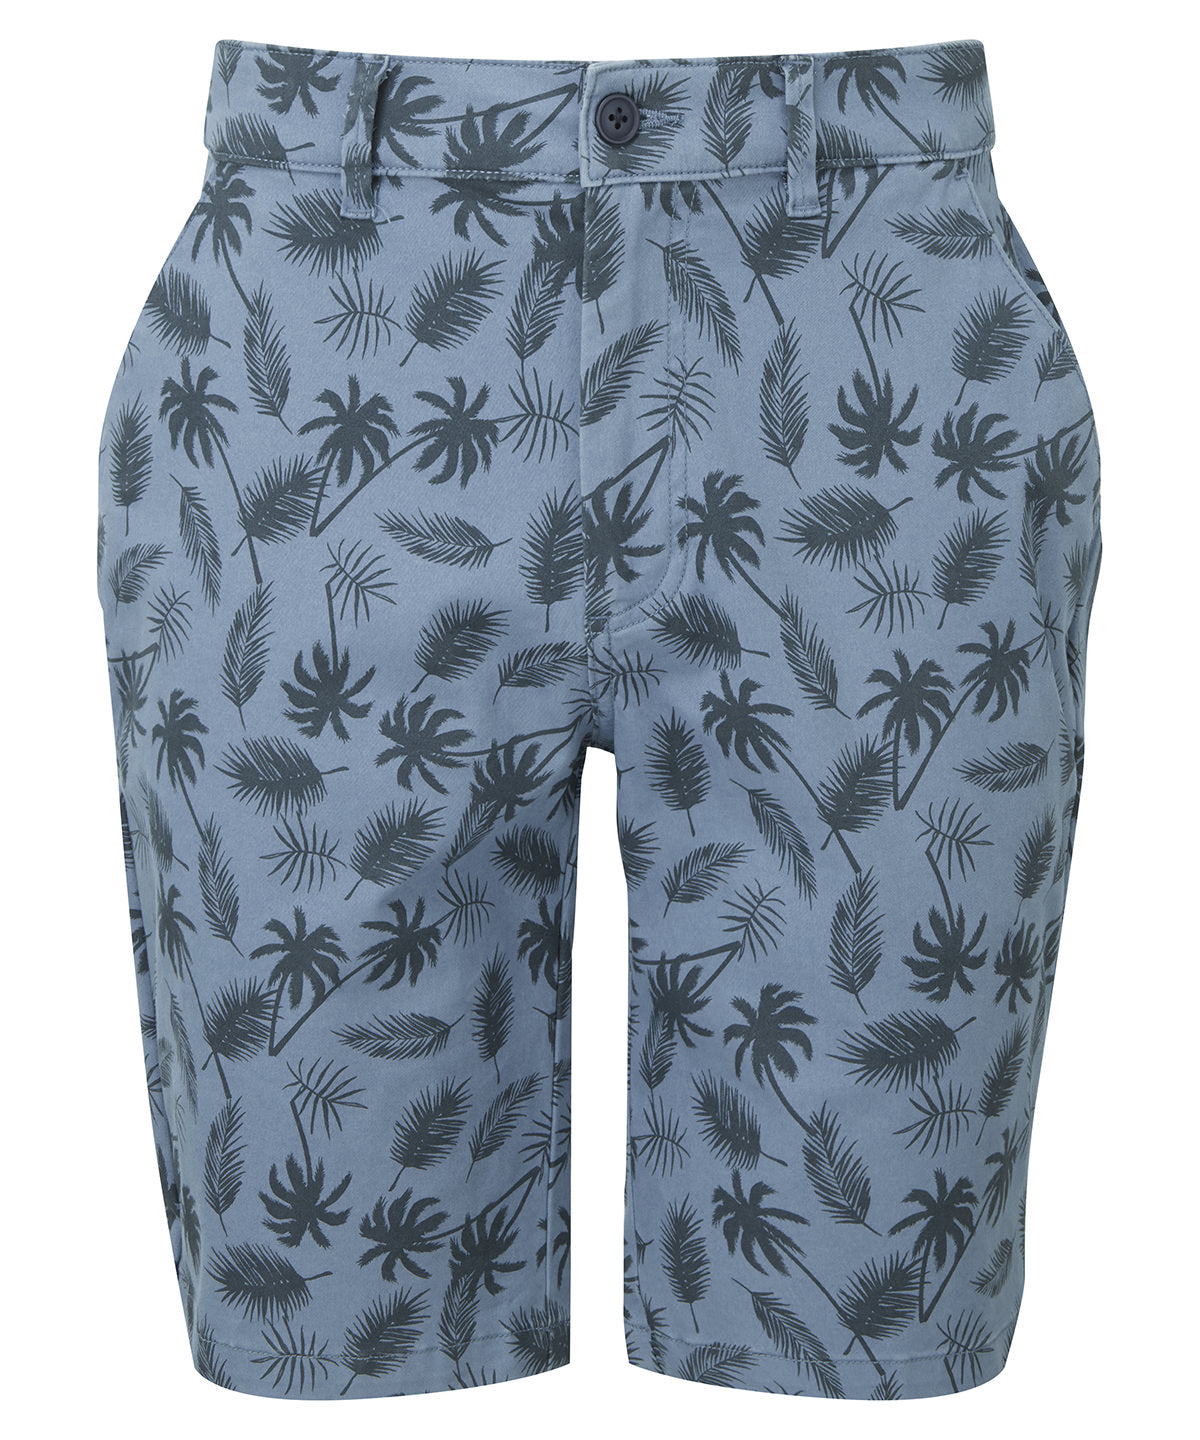 Stuttbuxur - Men’s Palm Print Shorts